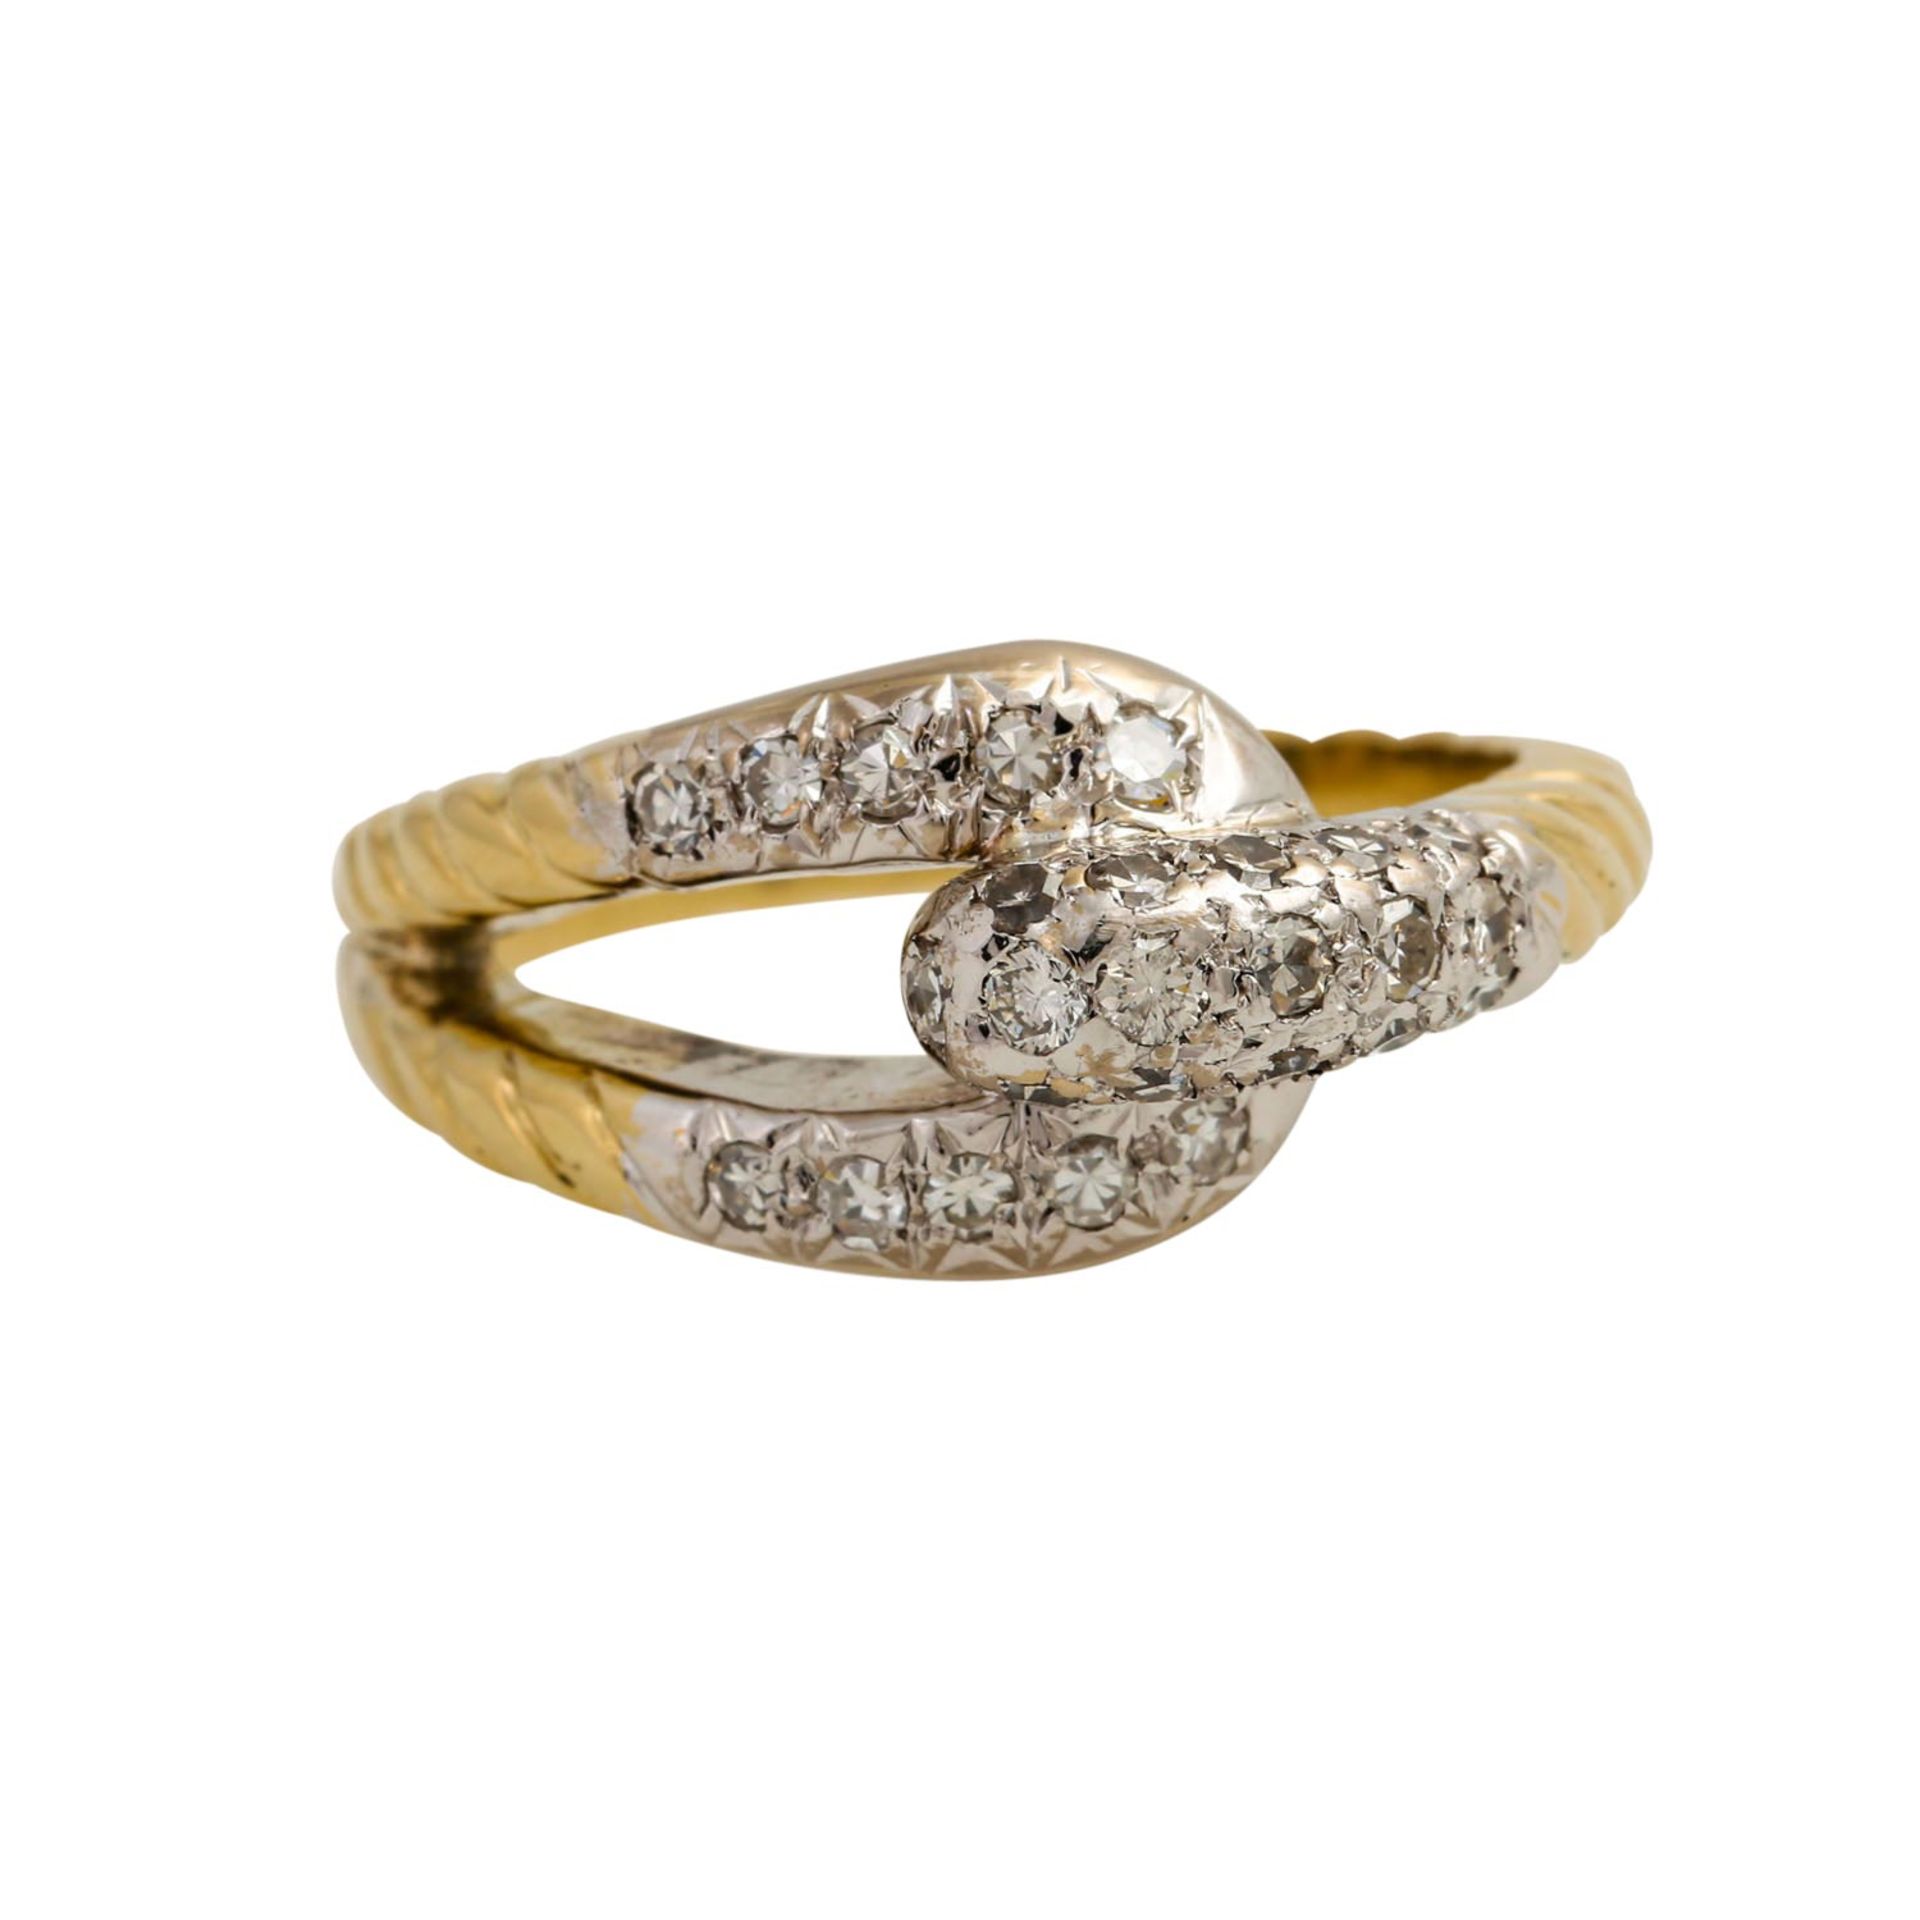 Ring mit Achtkantdiamanten zus. ca. 0,30 ct, gute Farbe u. Reinheit, GG 14K teilw. rho